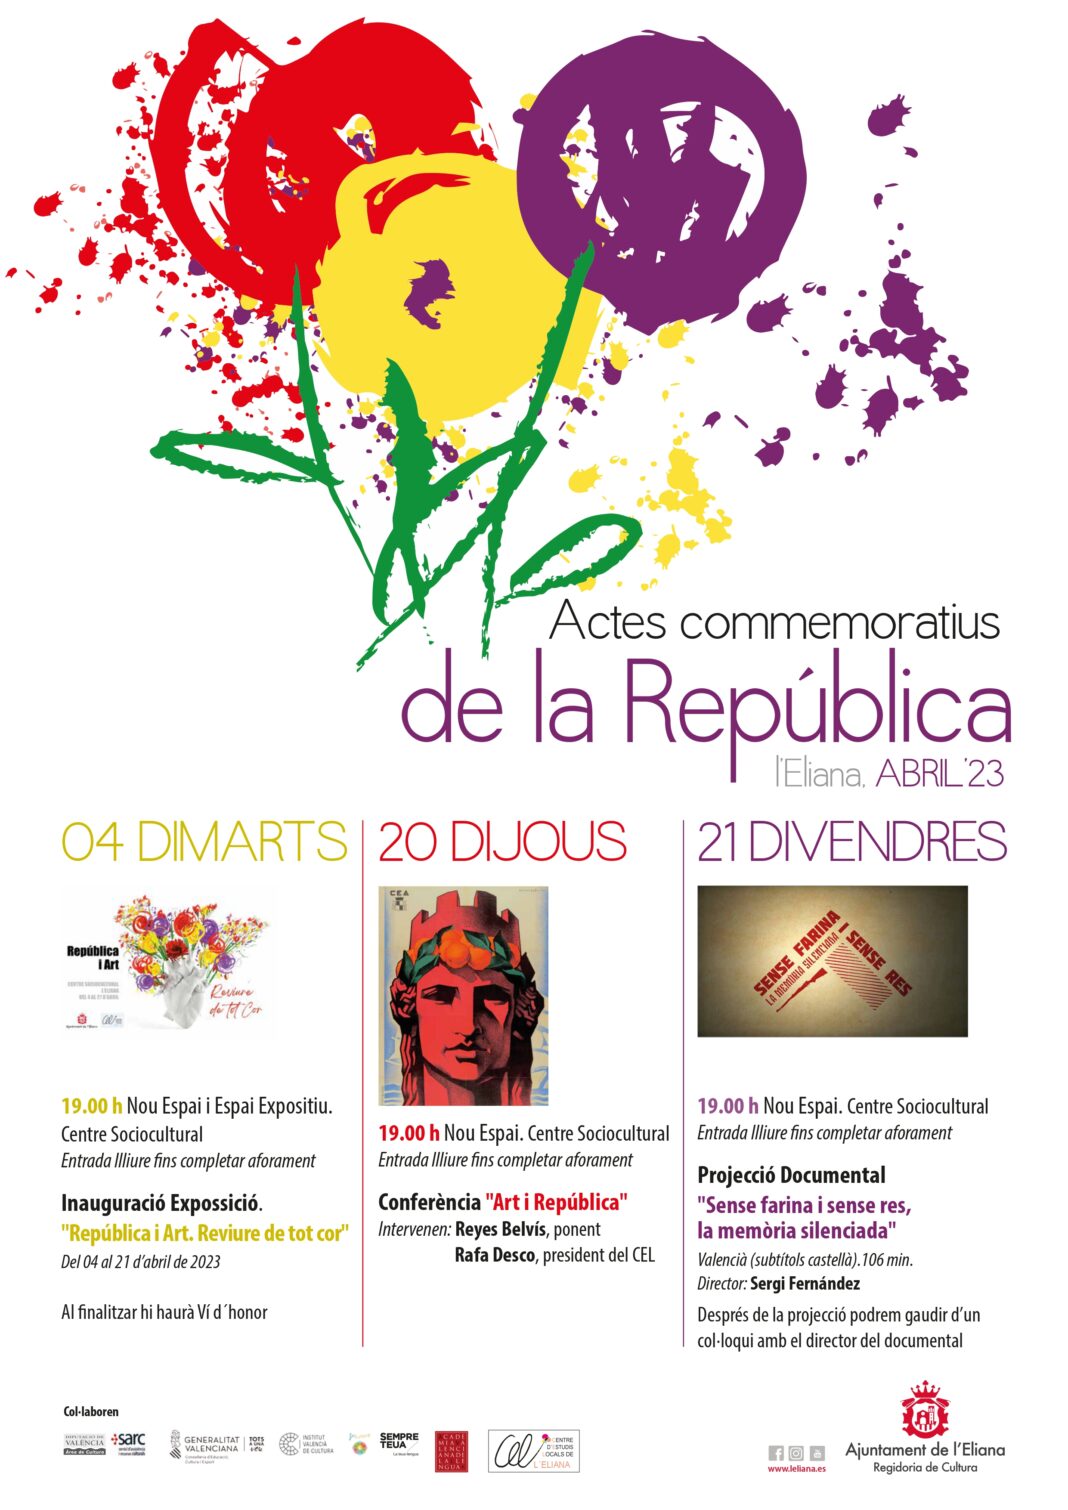 El Ajuntament de l'Eliana celebra actos conmemorativos de la República